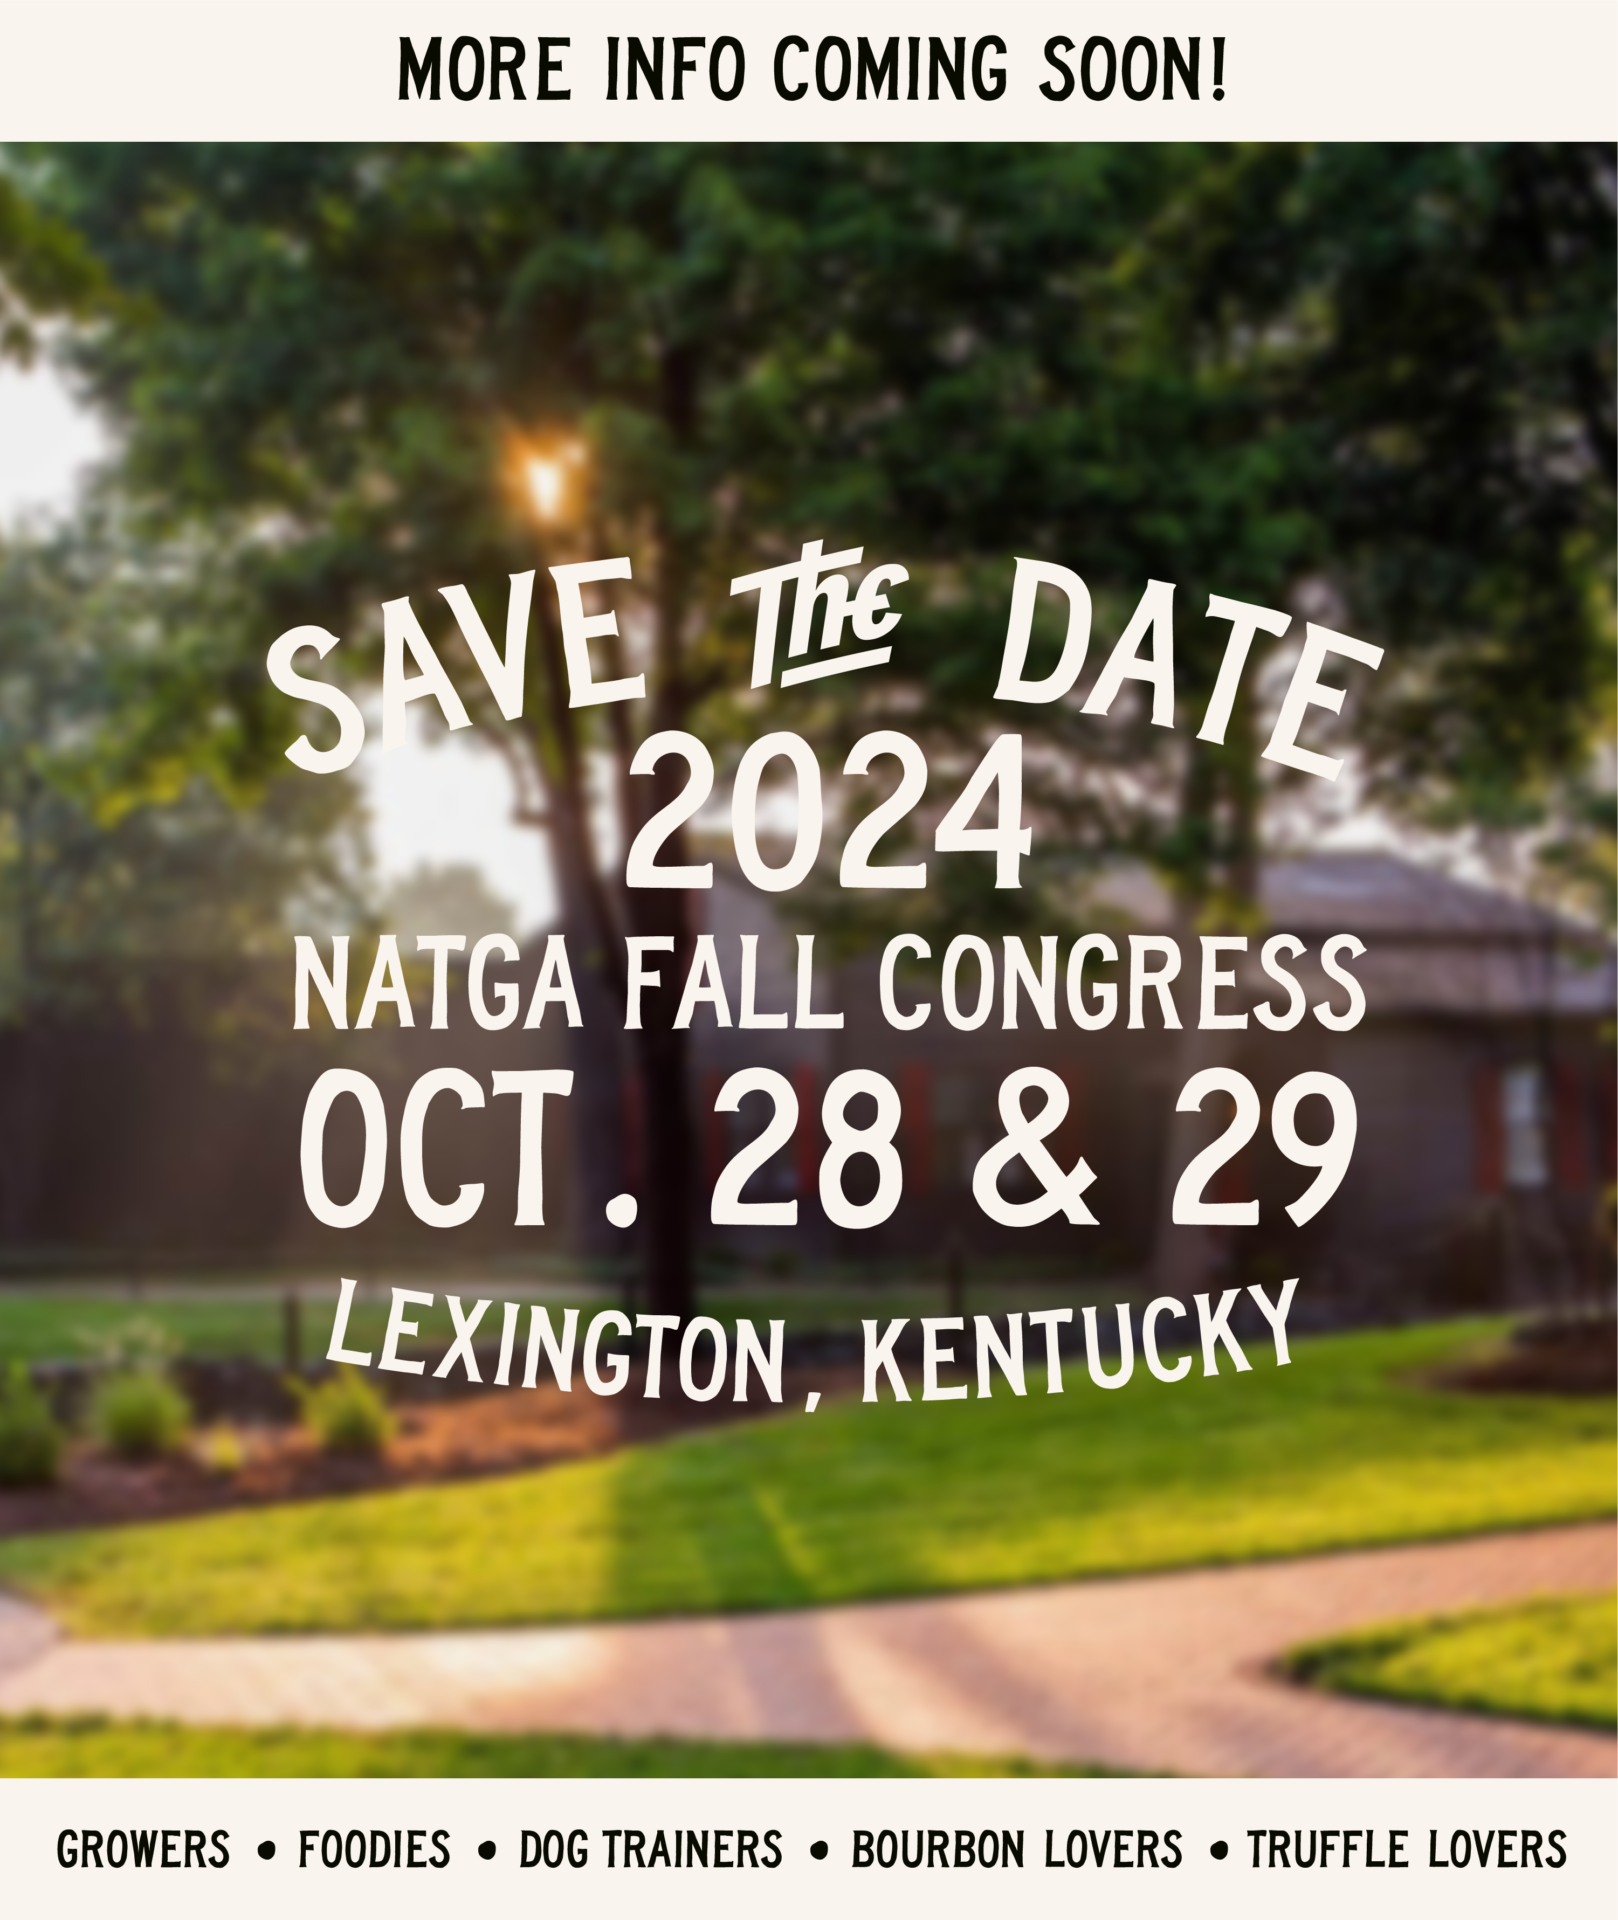 Save the date flyer for NATGA 2024 Congress in Lexington, Kentucky